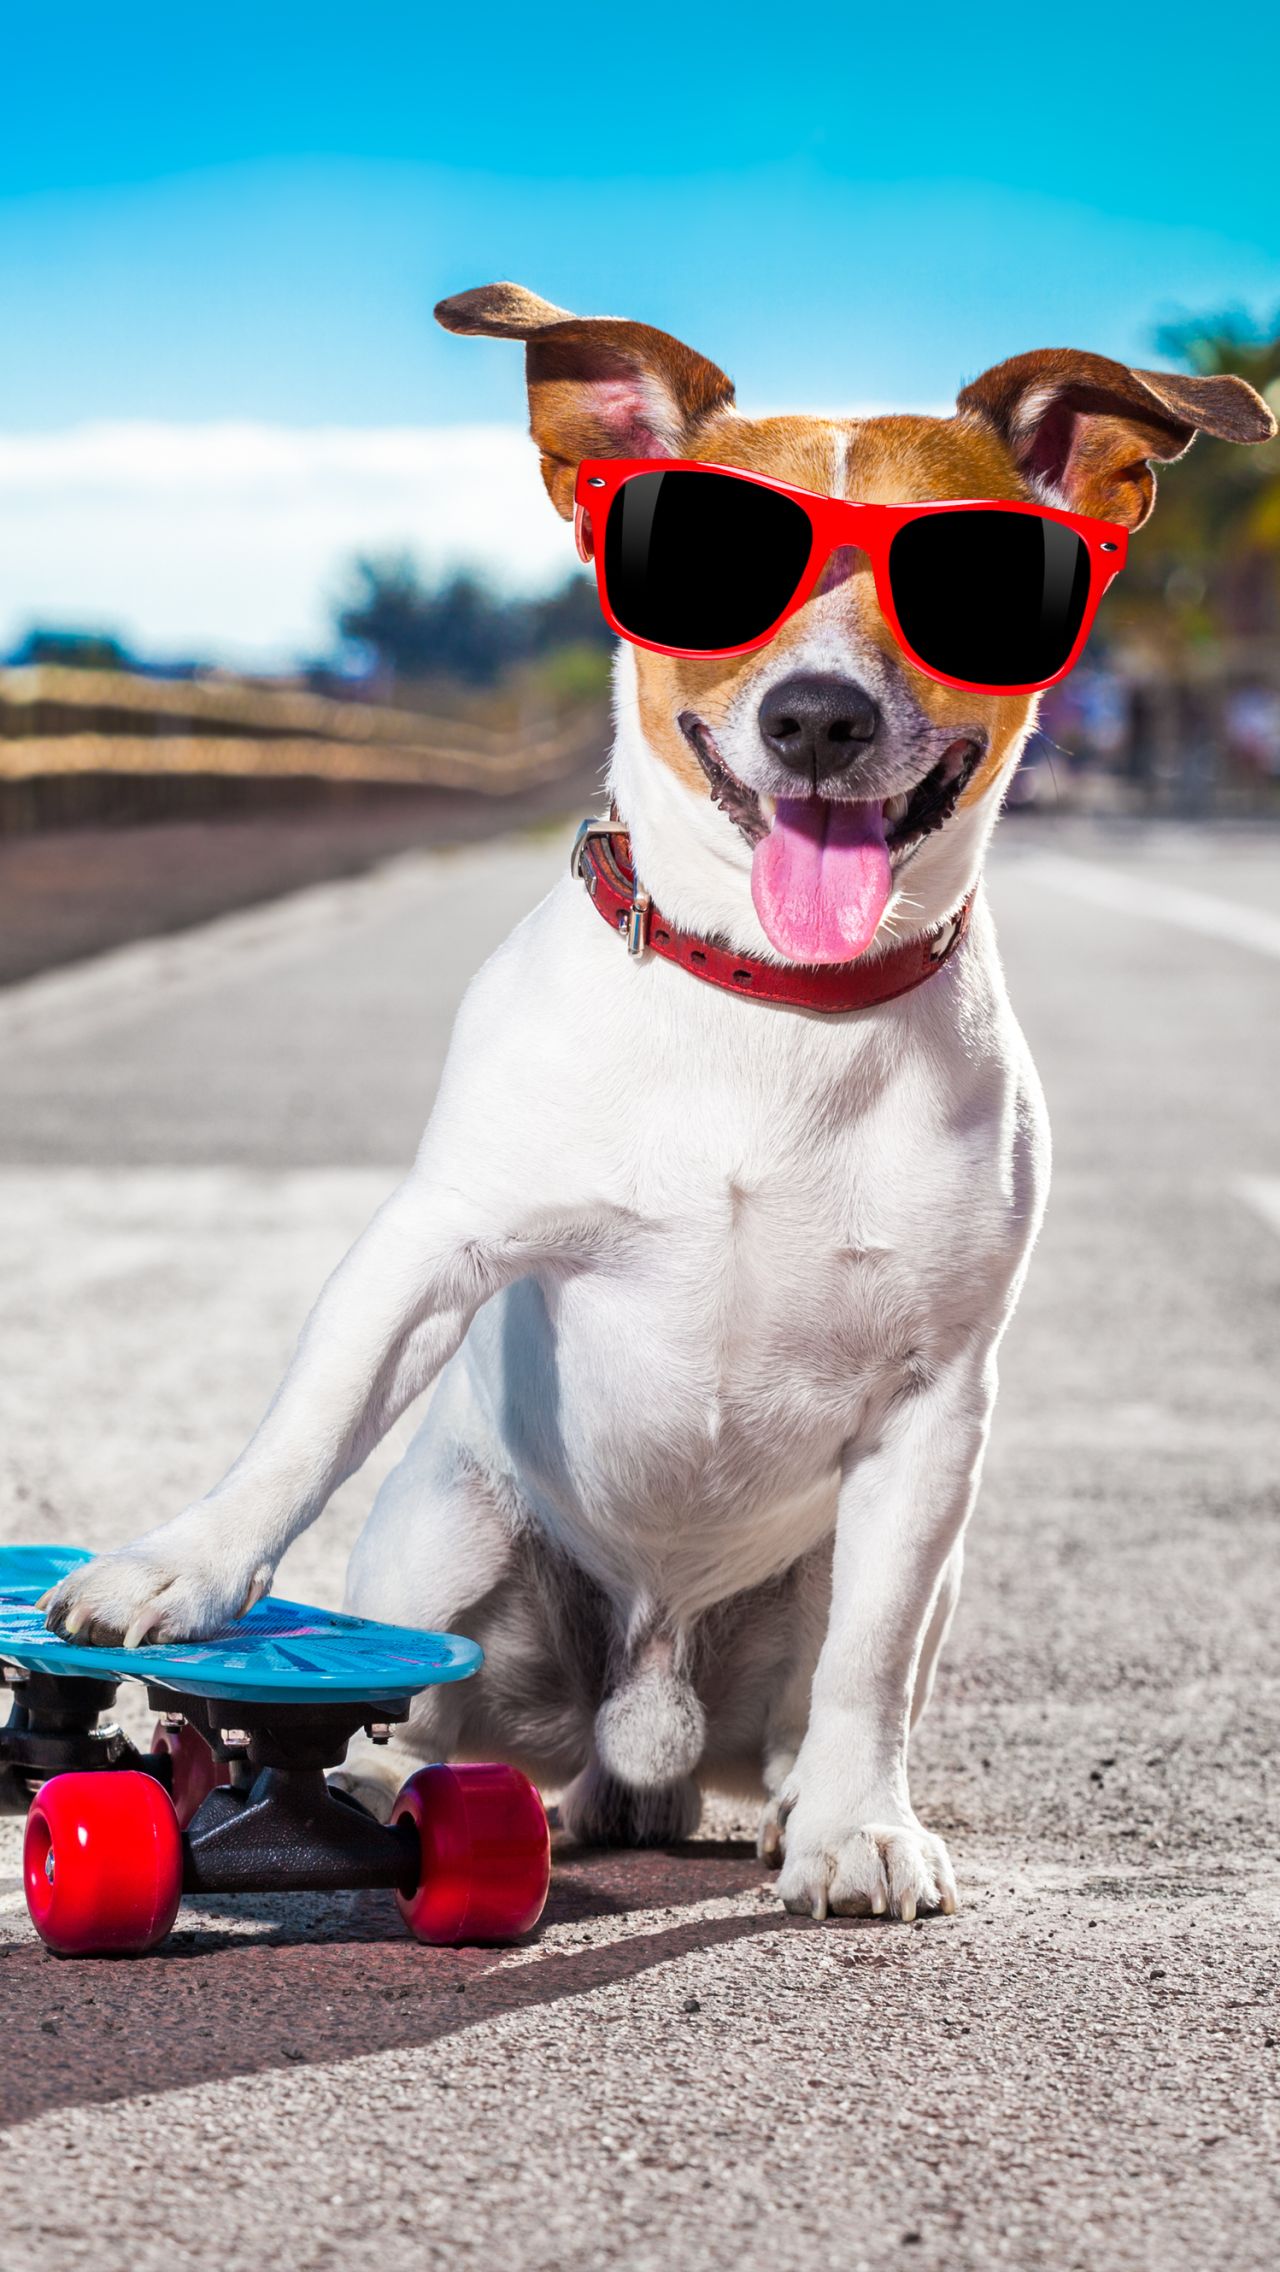 Пёс катается на скейтборде не хуже опытных райдеров. А ваш питомец так умеет?